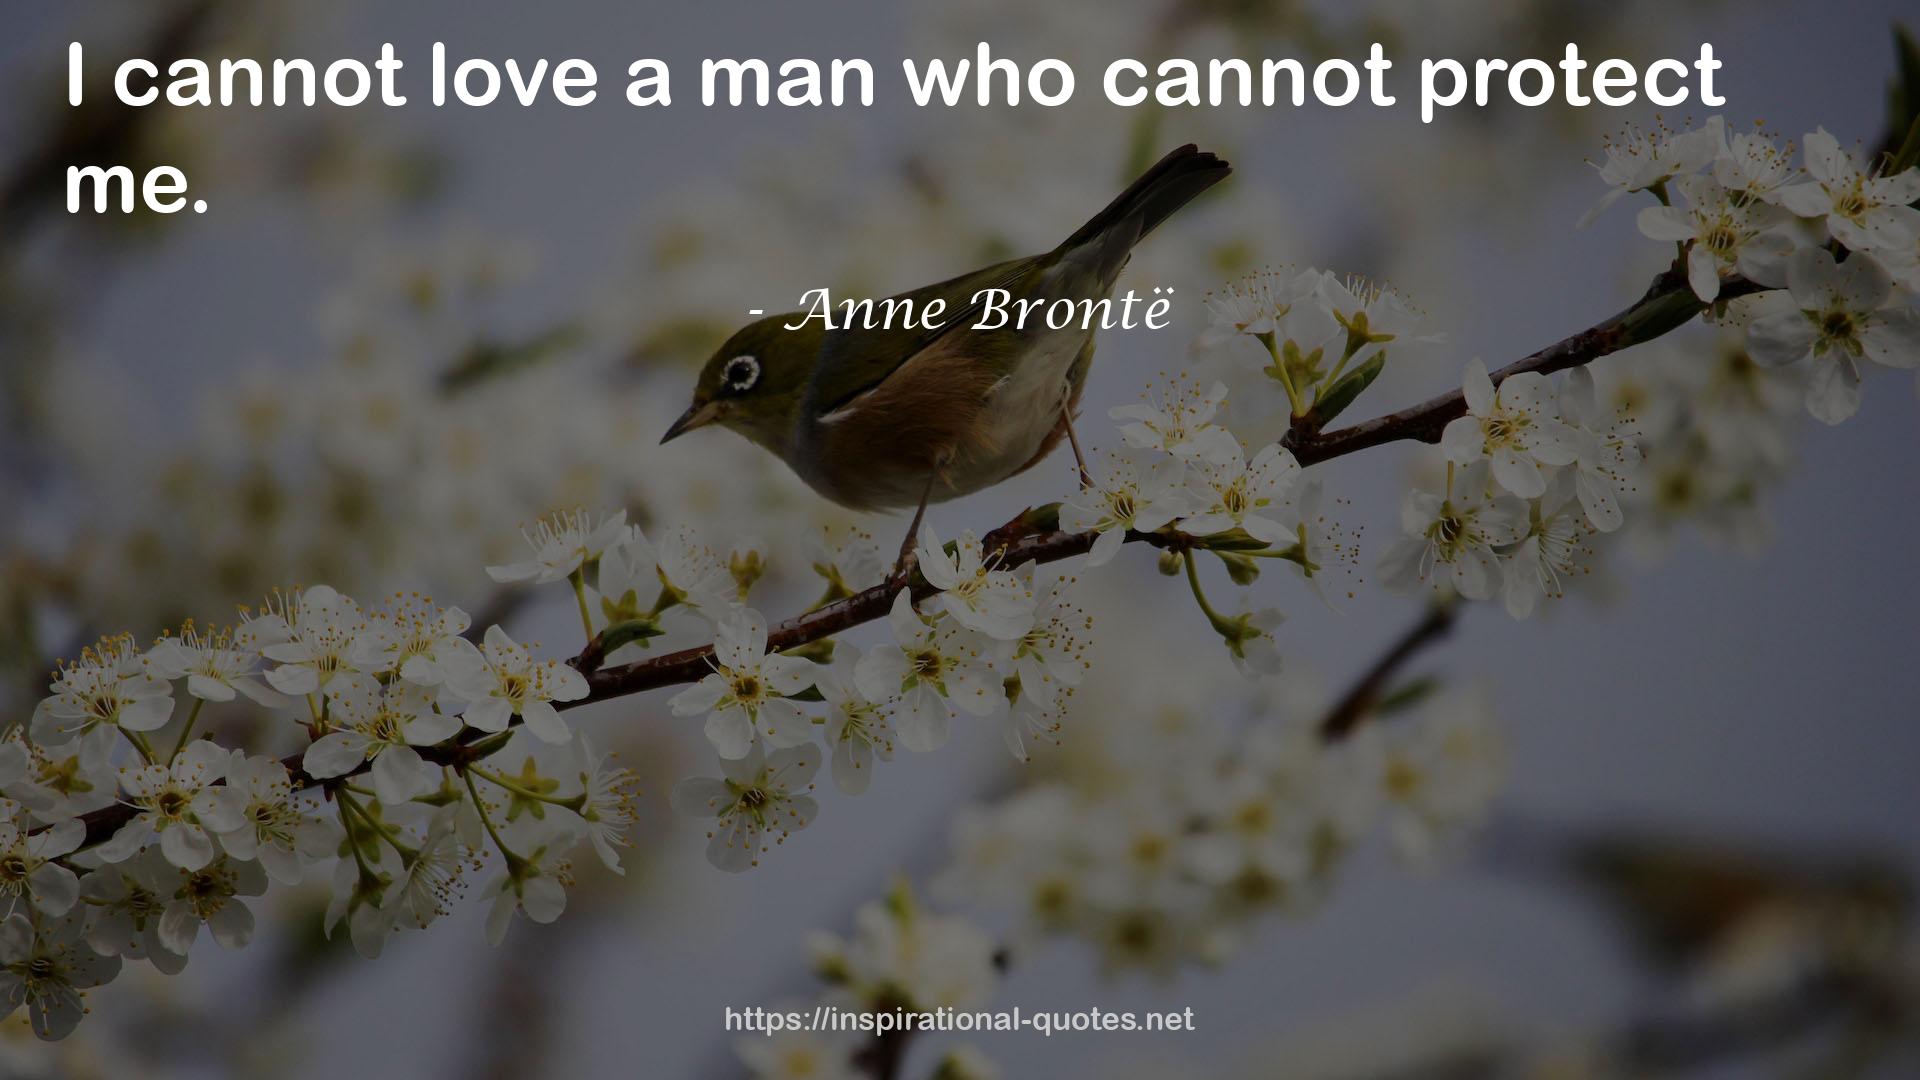 Anne Brontë QUOTES